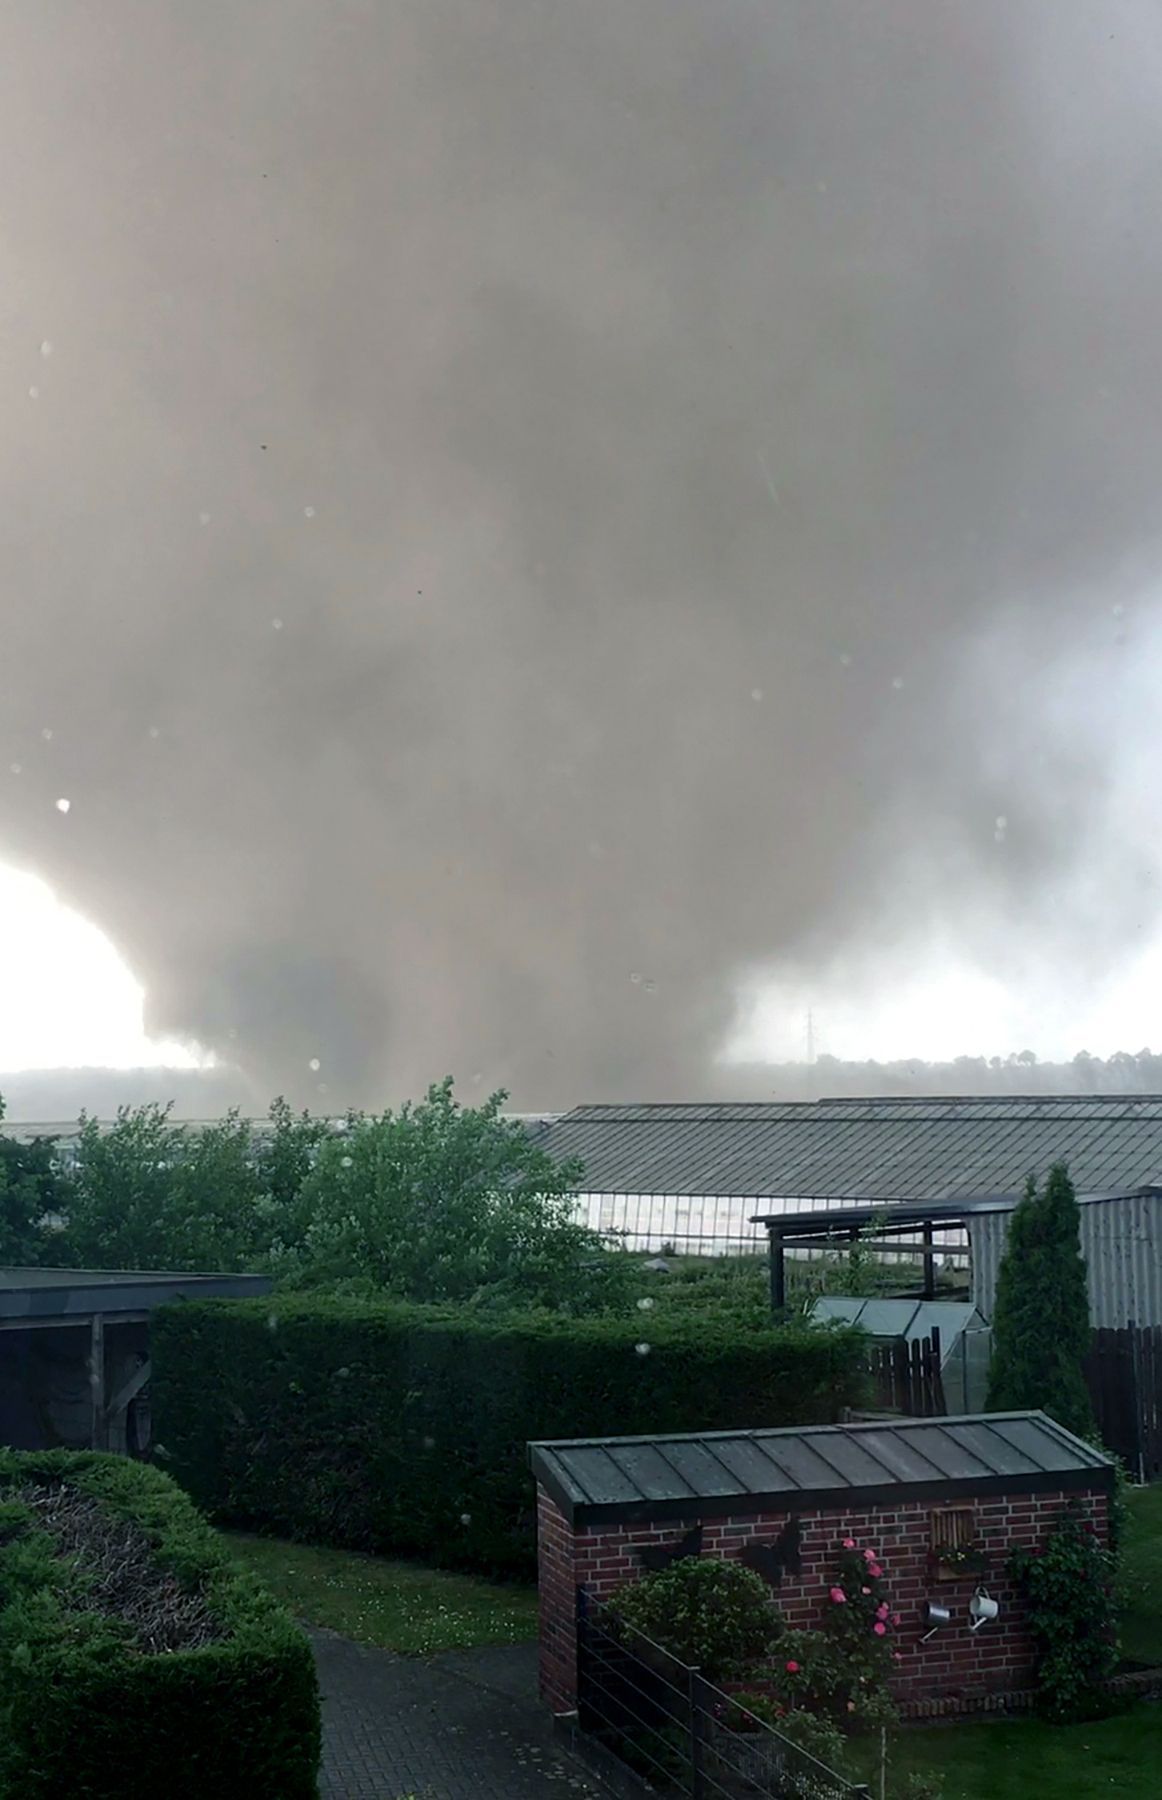 Viersen (Nordrhein-Westfalen), 2018: Aus einer Wolke entwickeln sich mehrere Tornados gleichzeitig, die über rund 5,4 Kilometer hinwegfegen.